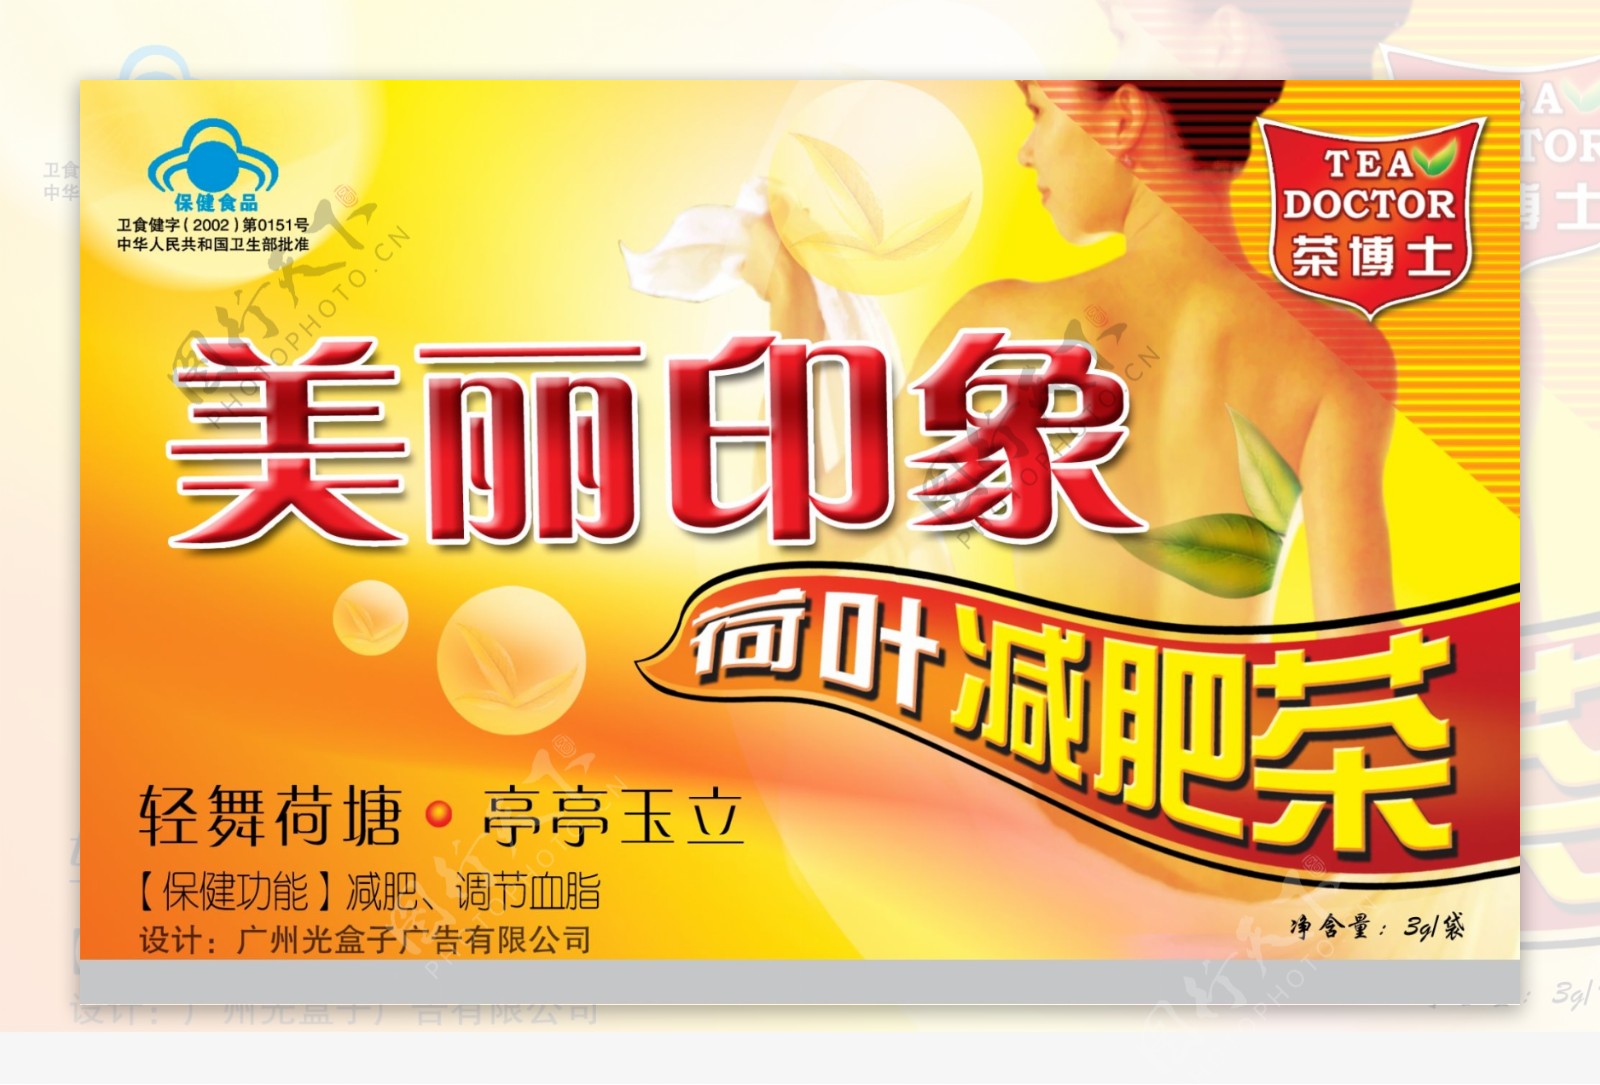 龙腾广告平面广告PSD分层素材源文件医疗保健减肥茶博士